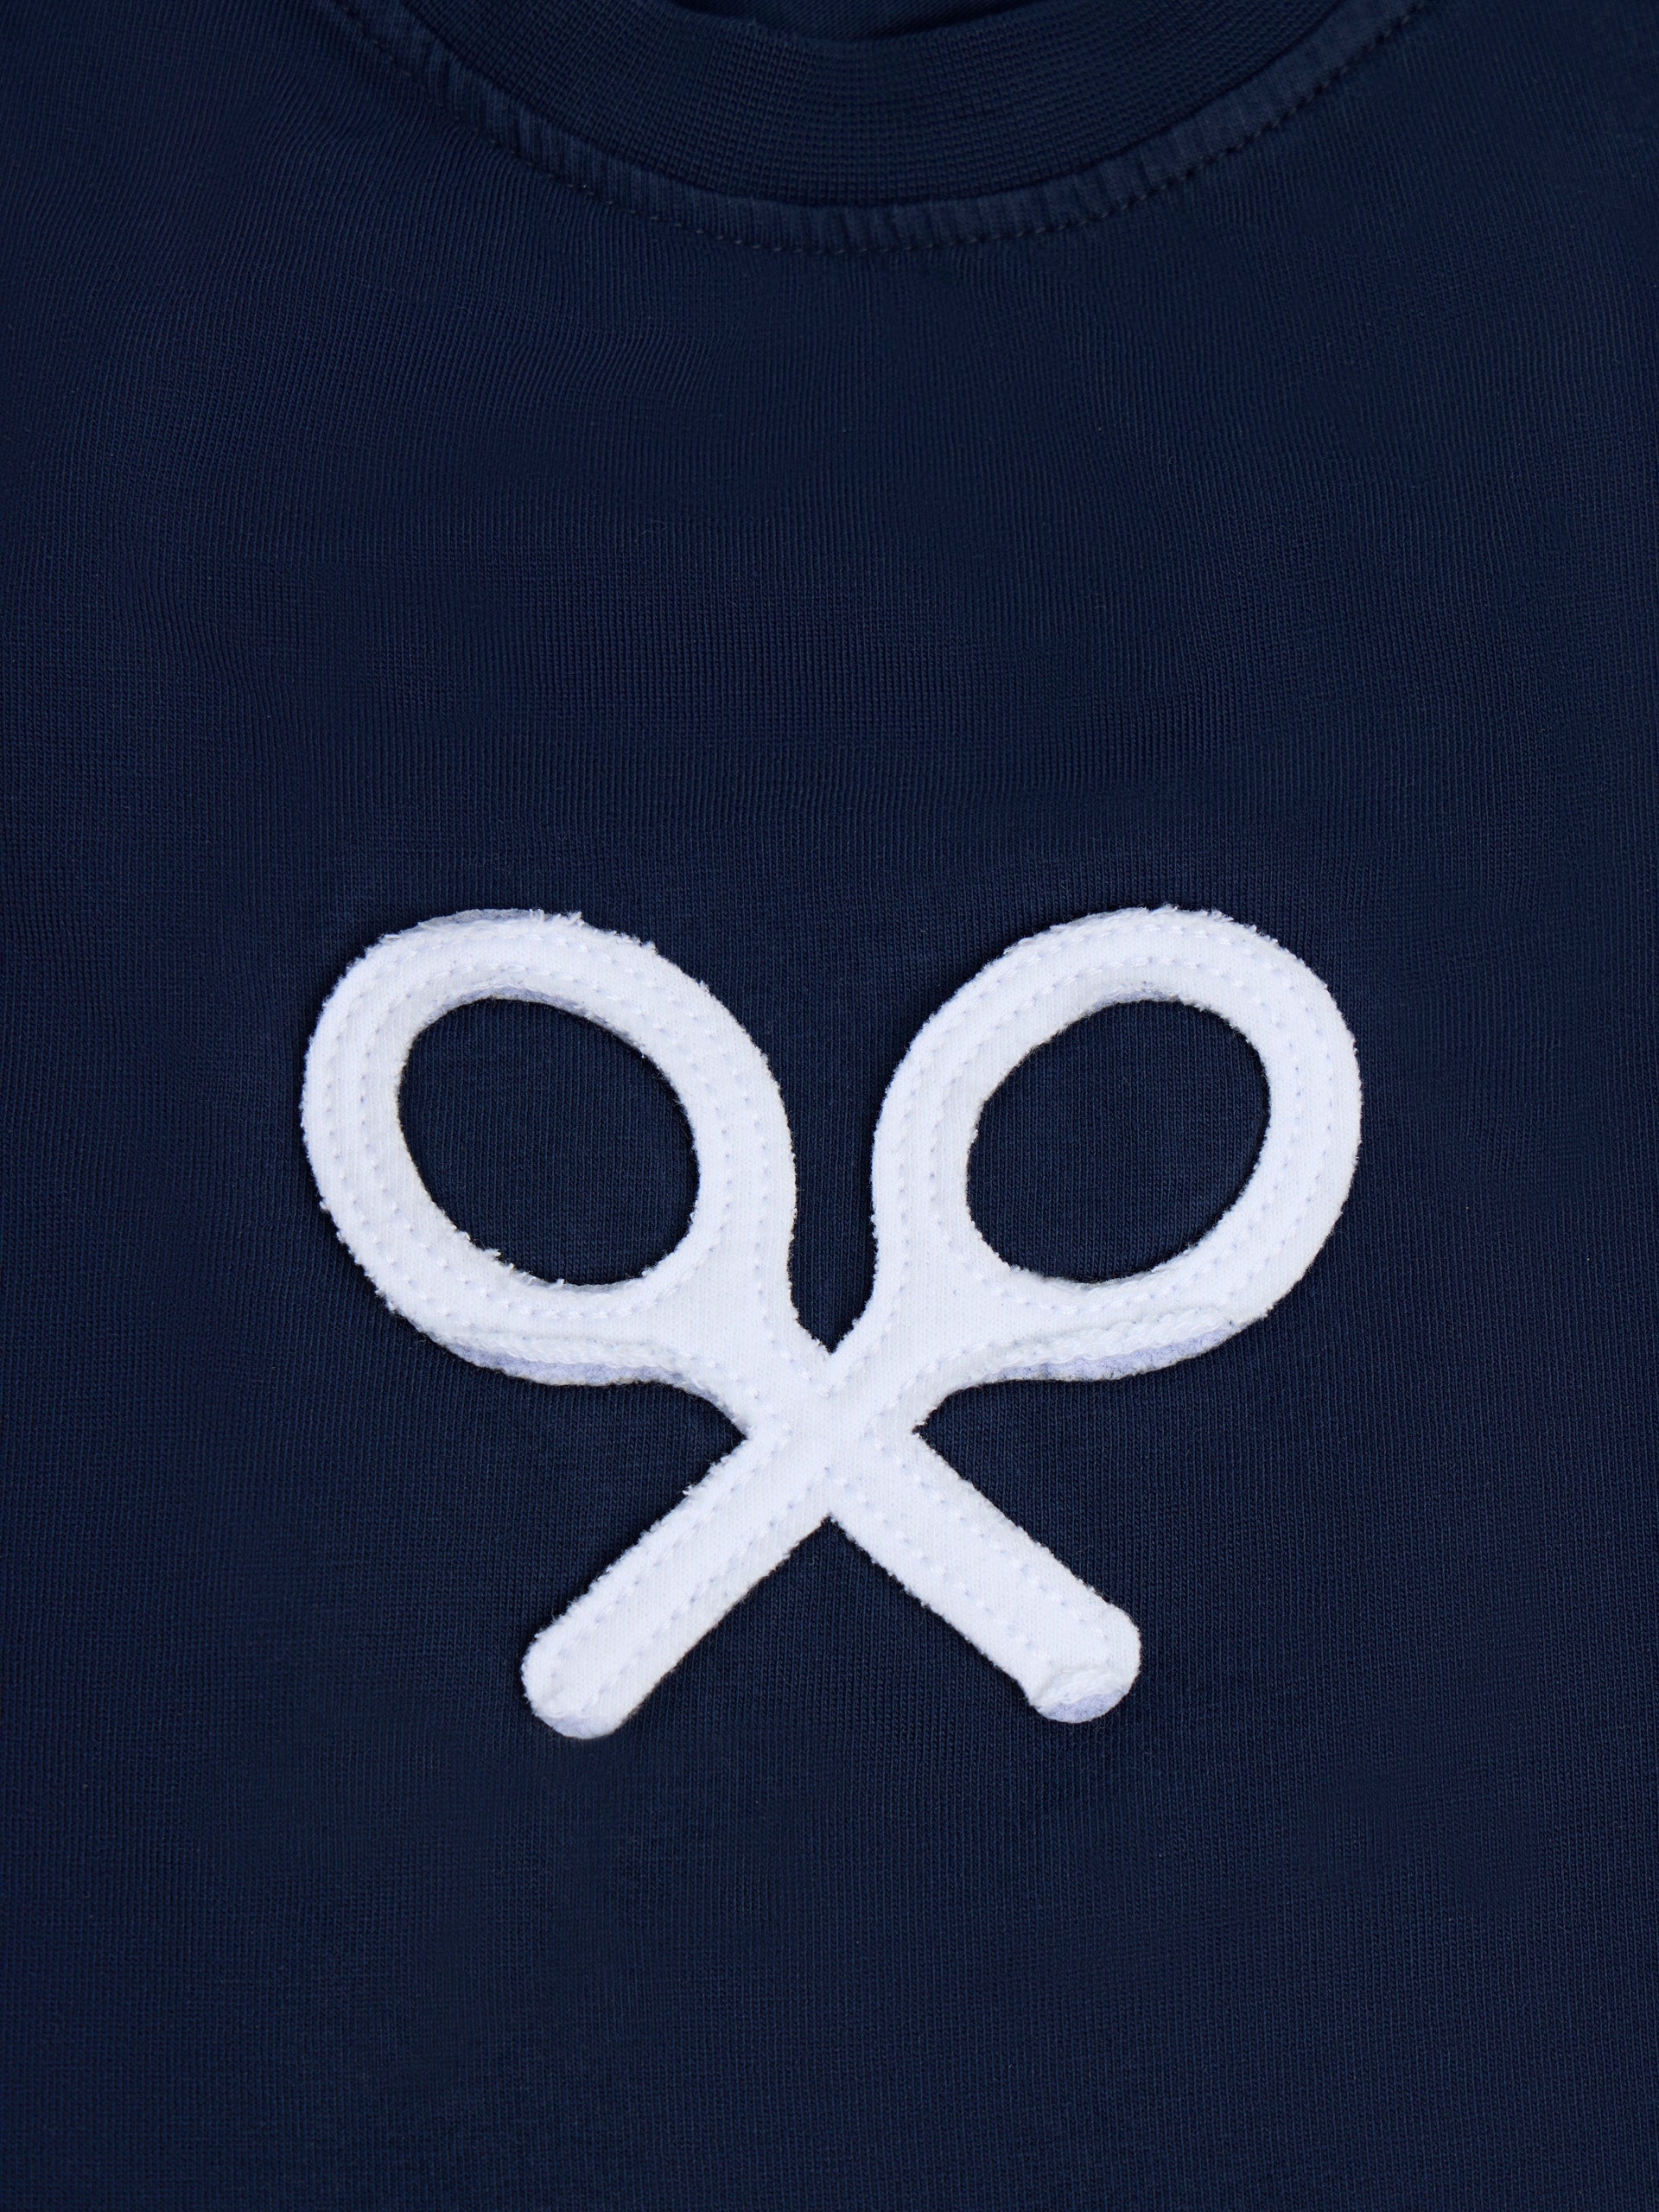 Camiseta mascota azul marino